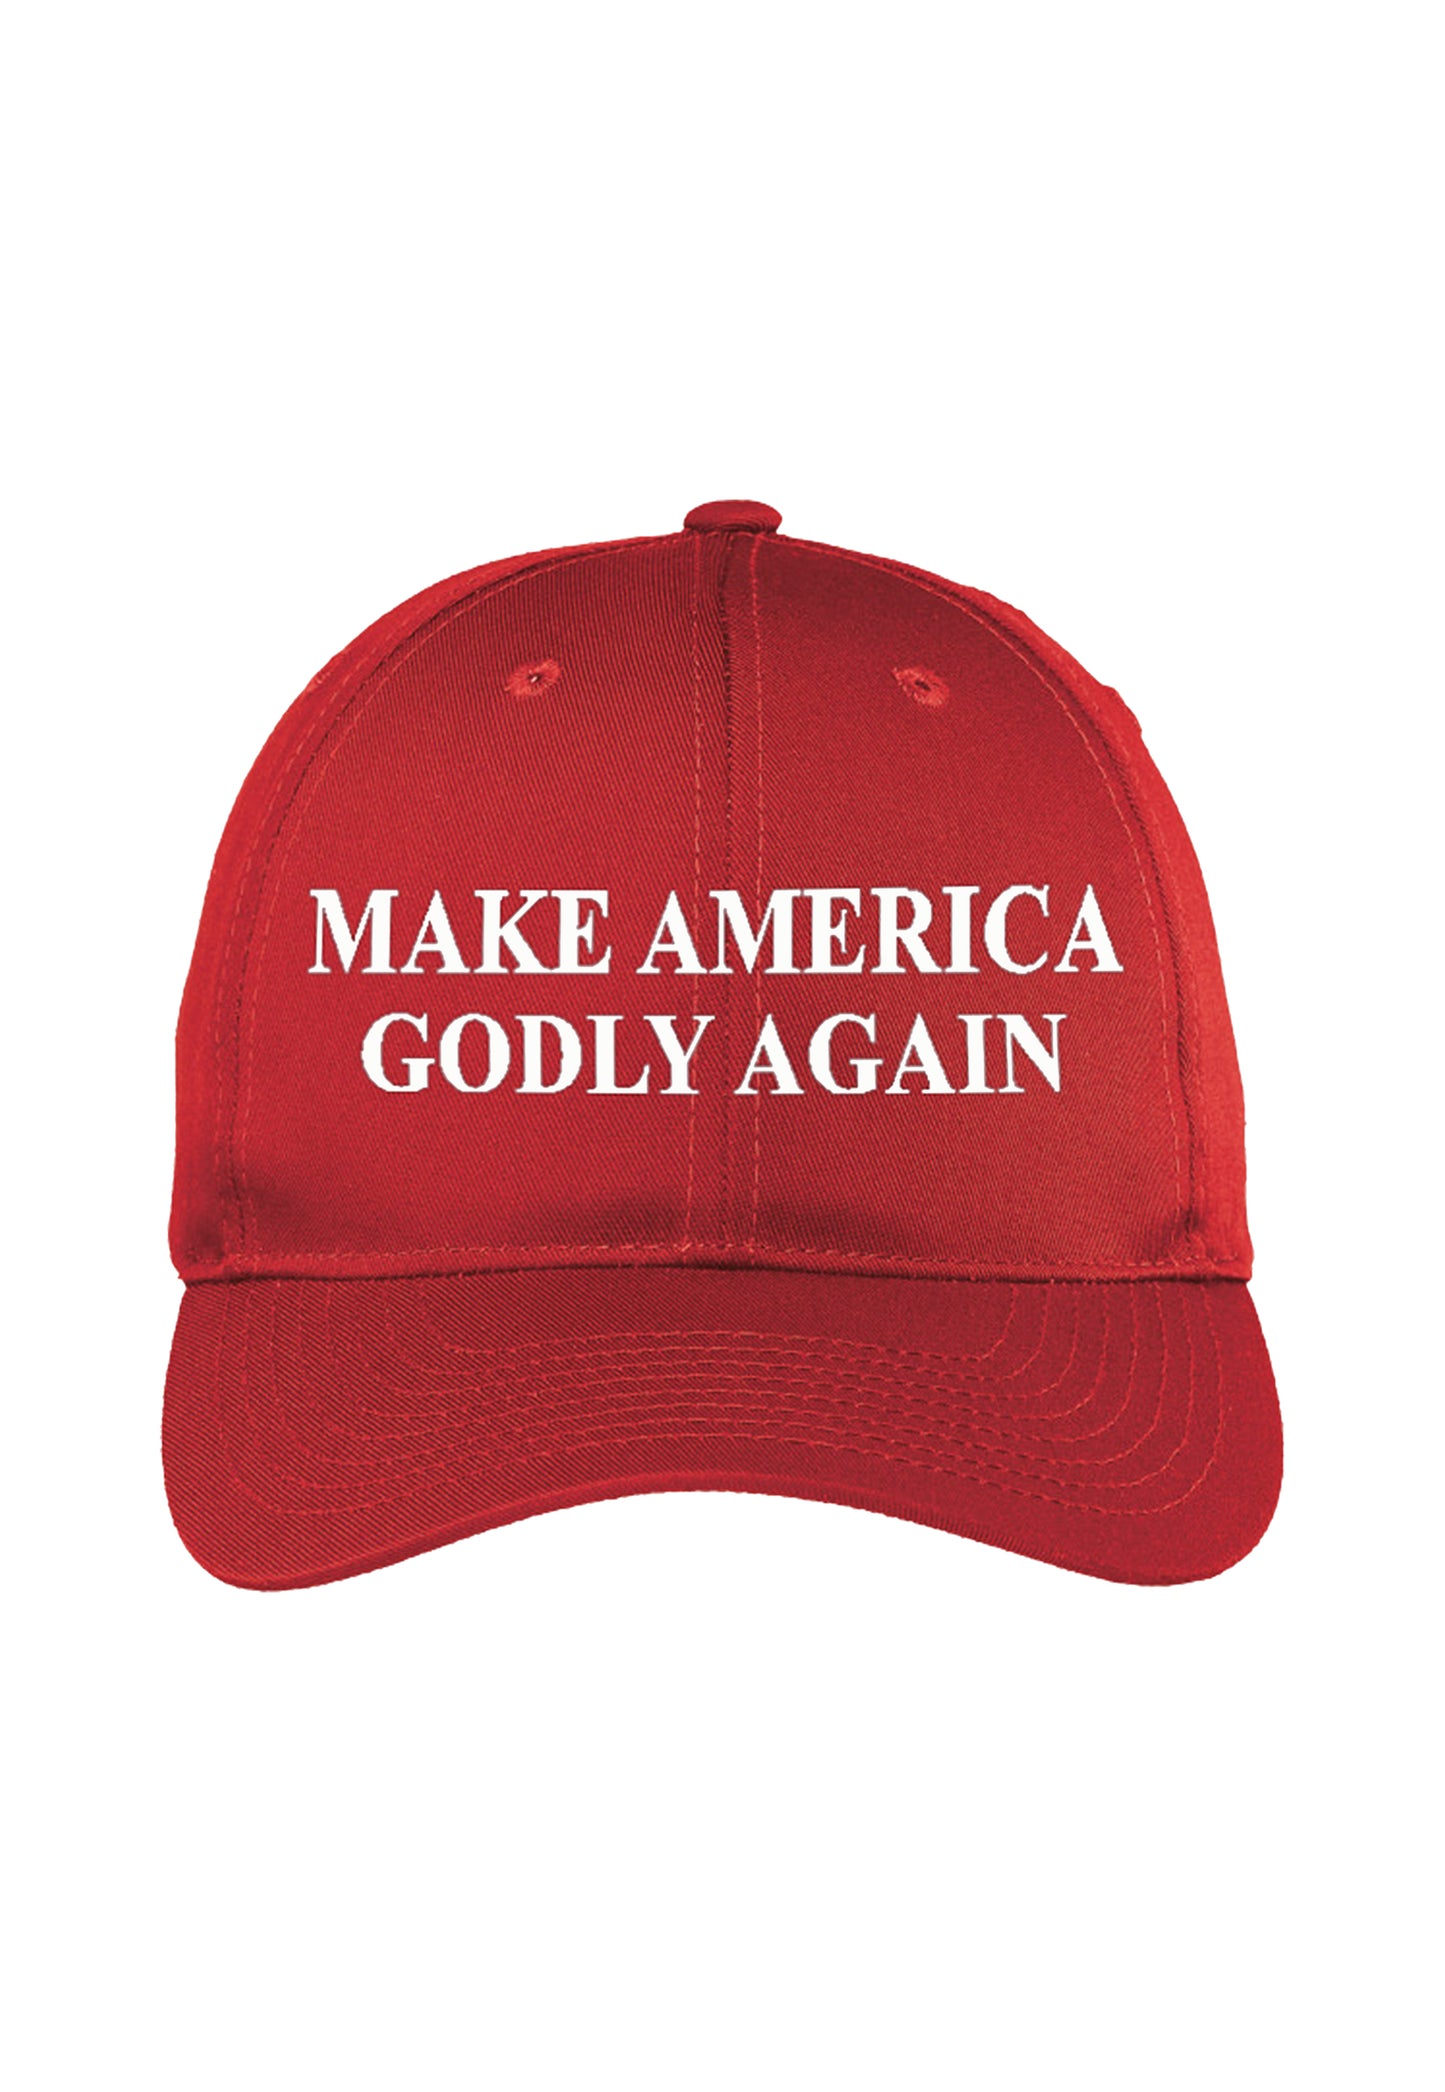 maga hat make america godly again